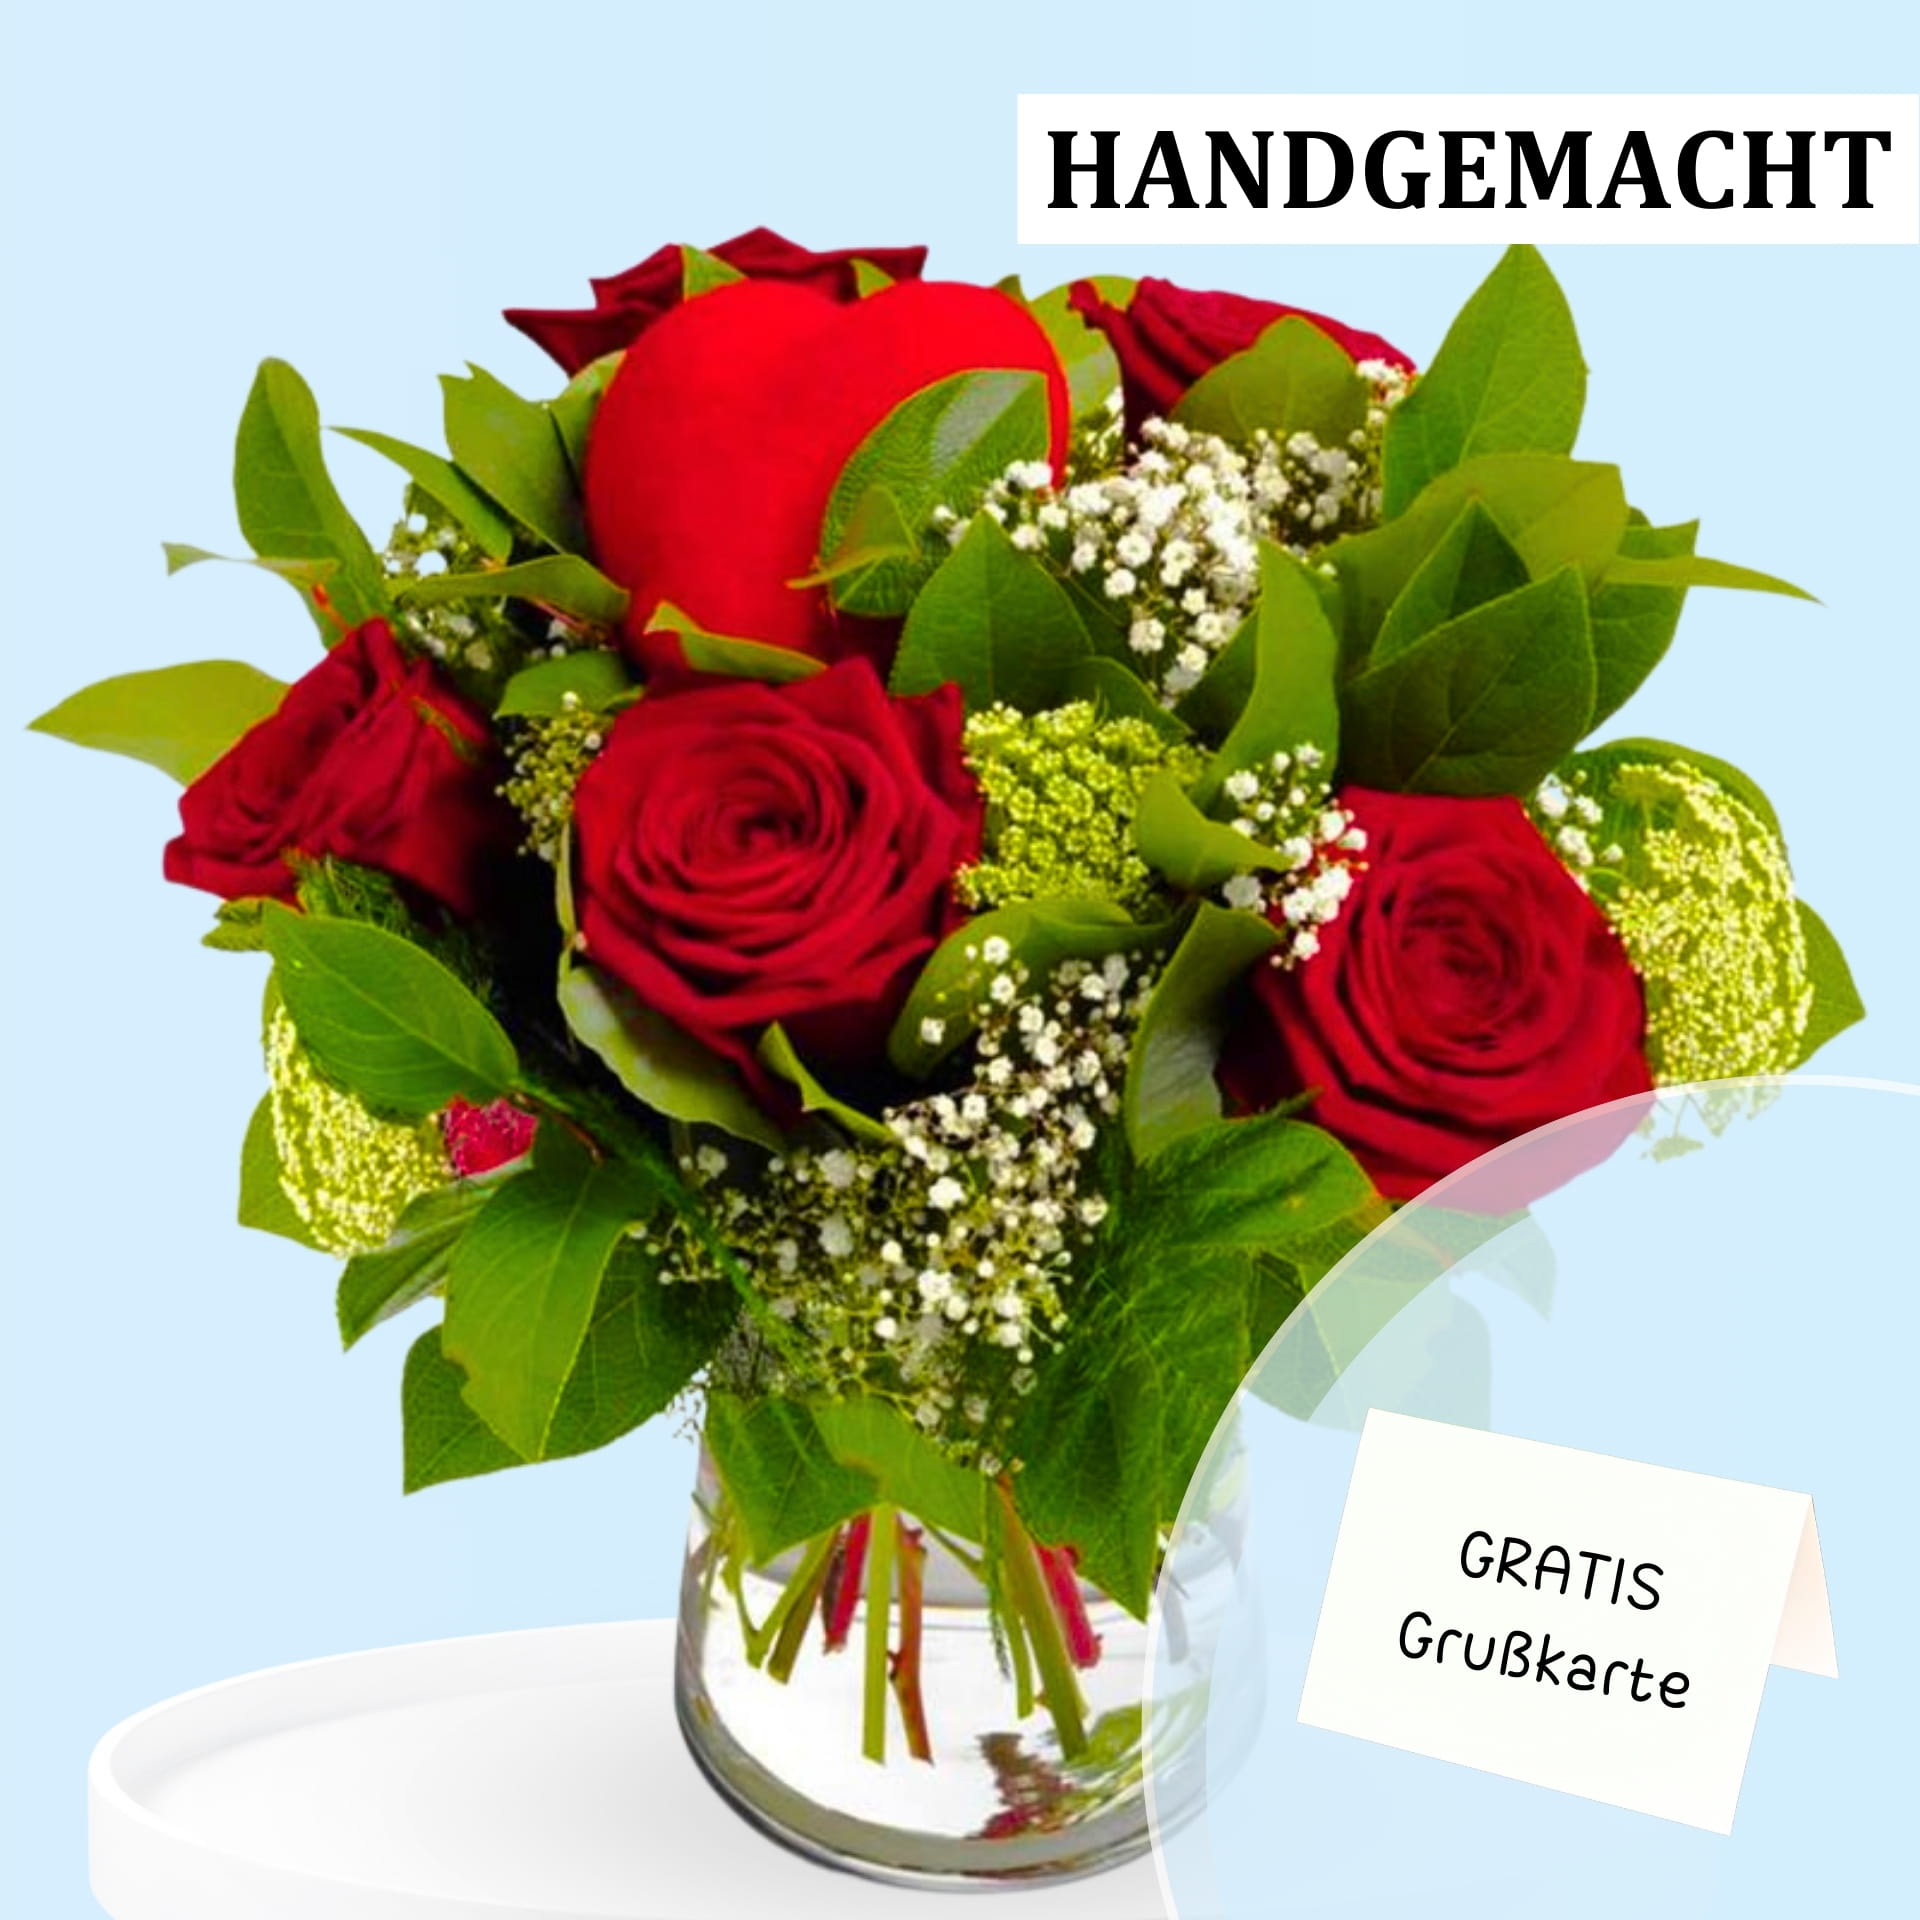 Handgemachter Blumenstrauß aus roten Rosen mit grünem Laub und weißen Blüten, inklusive kostenloser Grußkarte